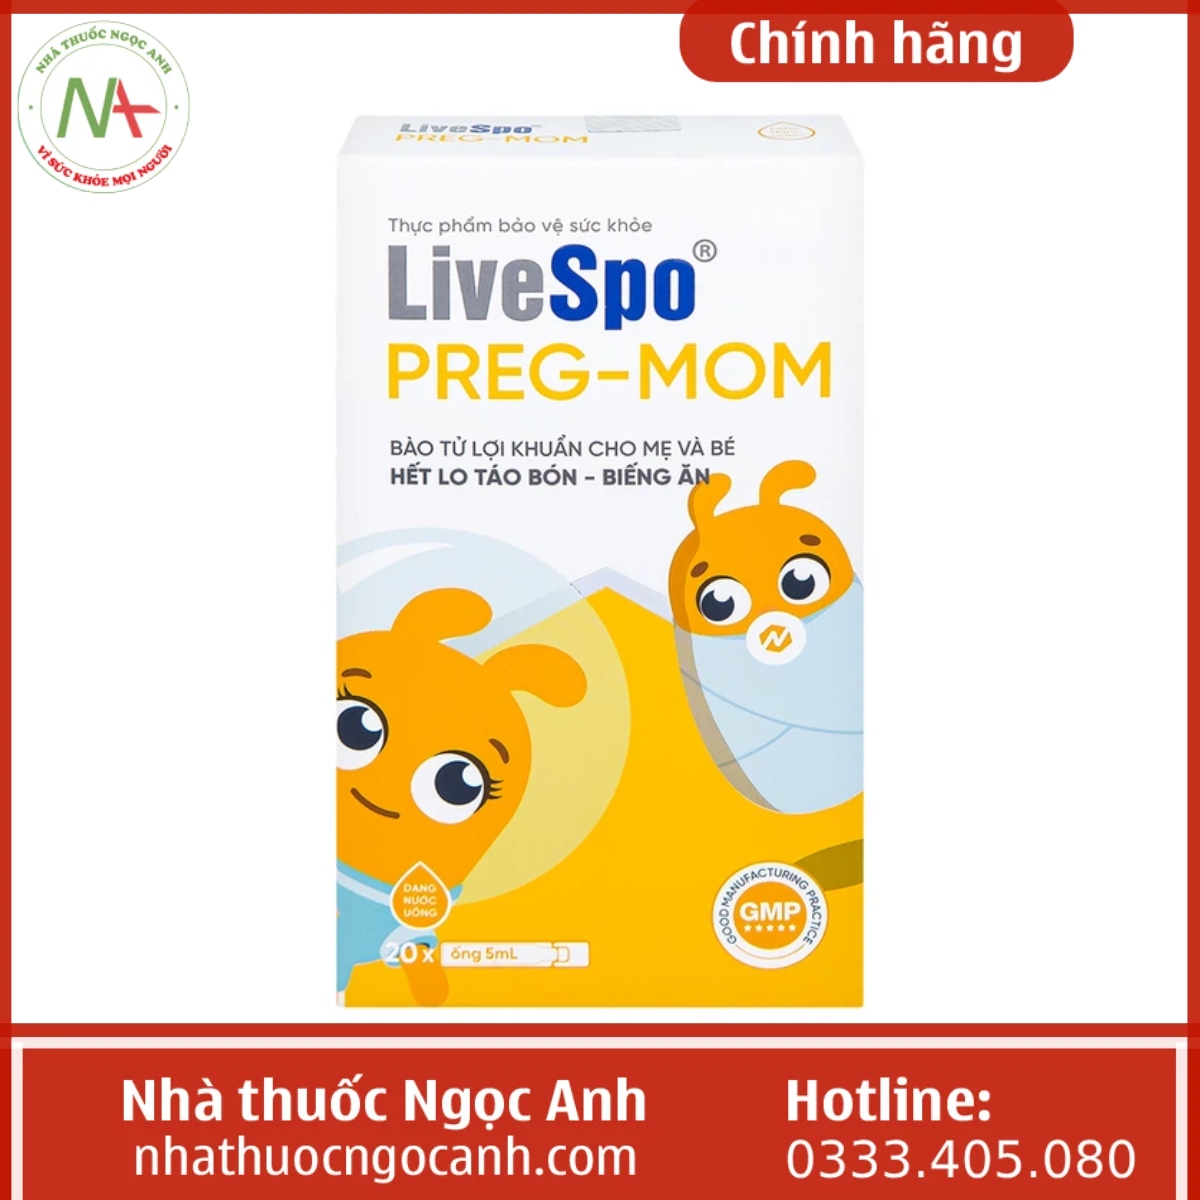 LiveSpo Preg-Mom